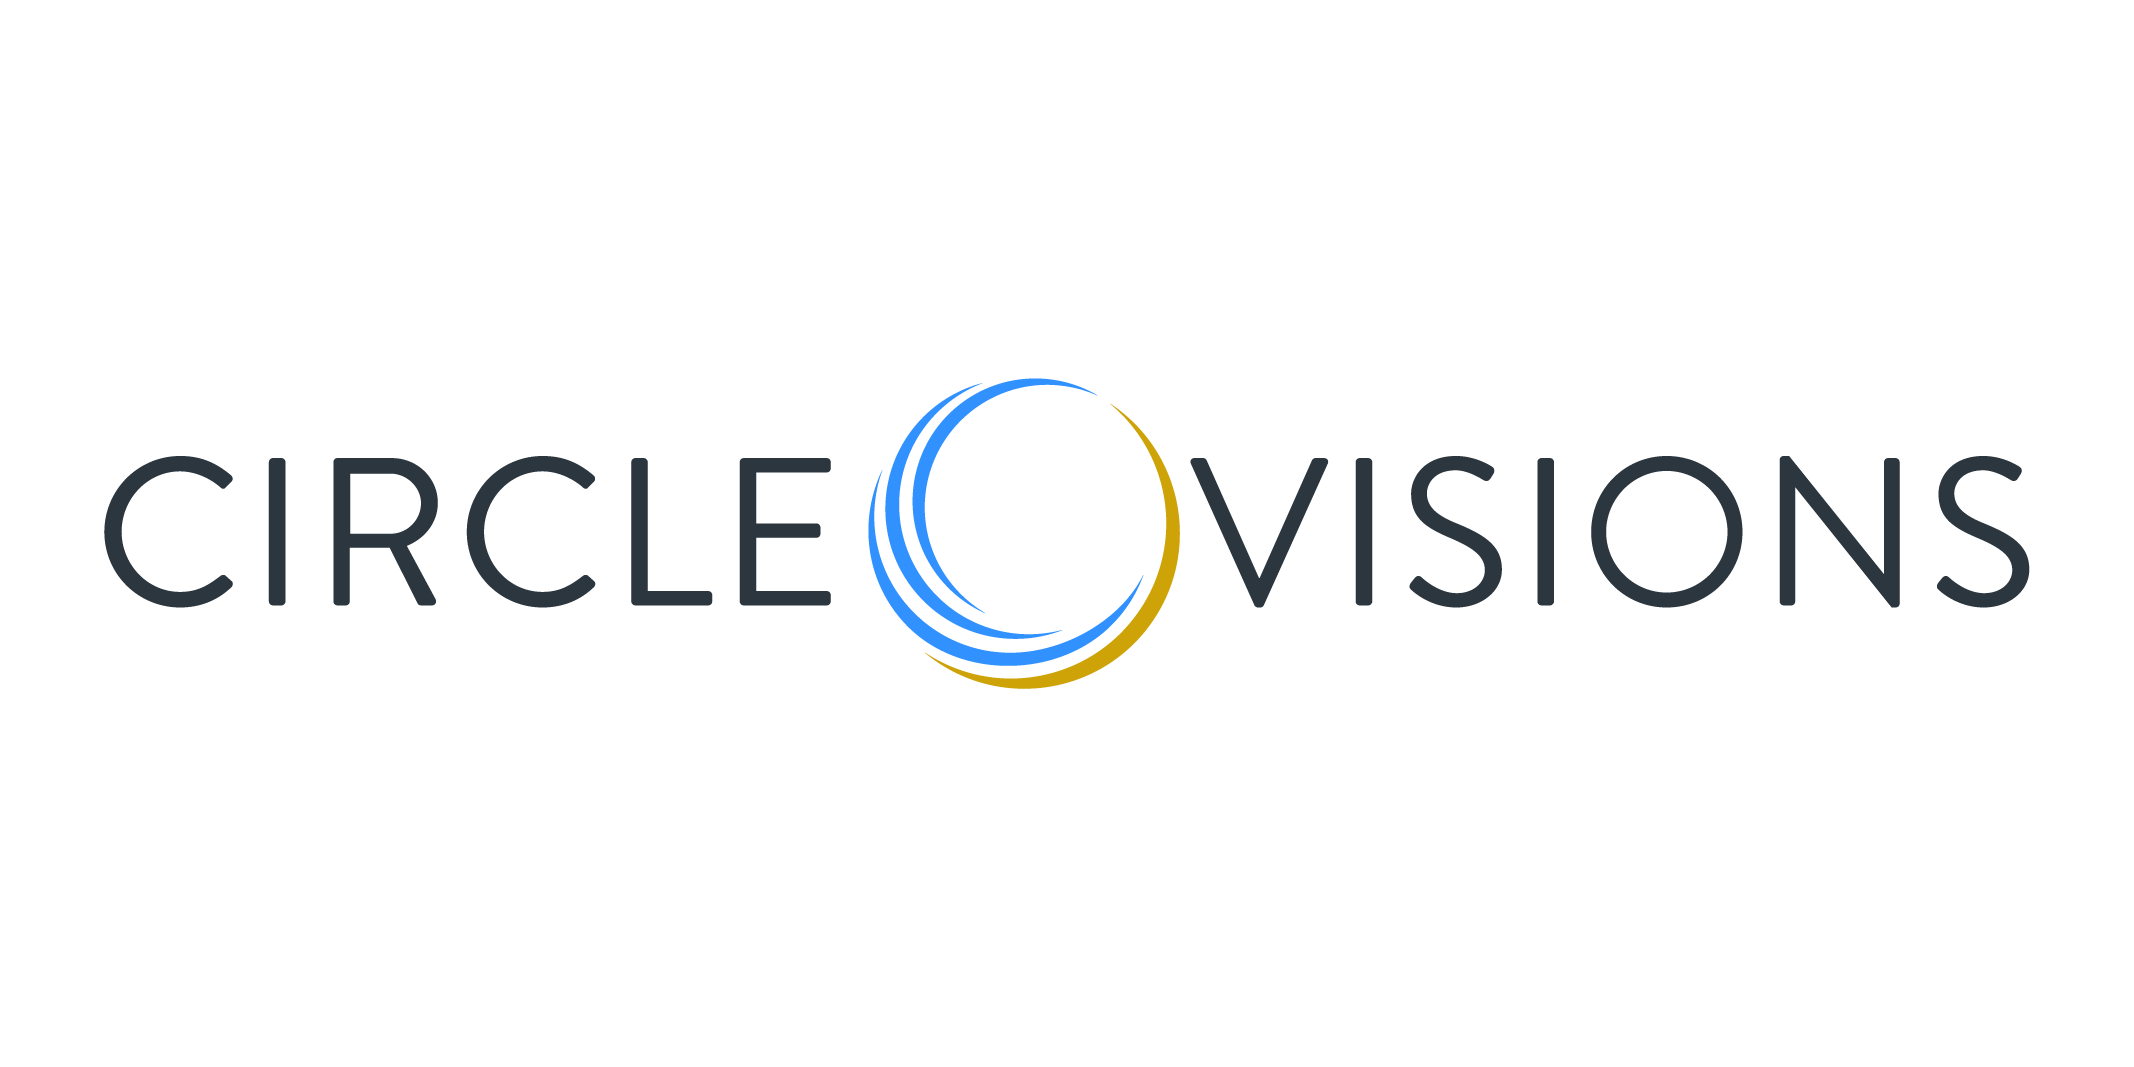 circlevision_logo